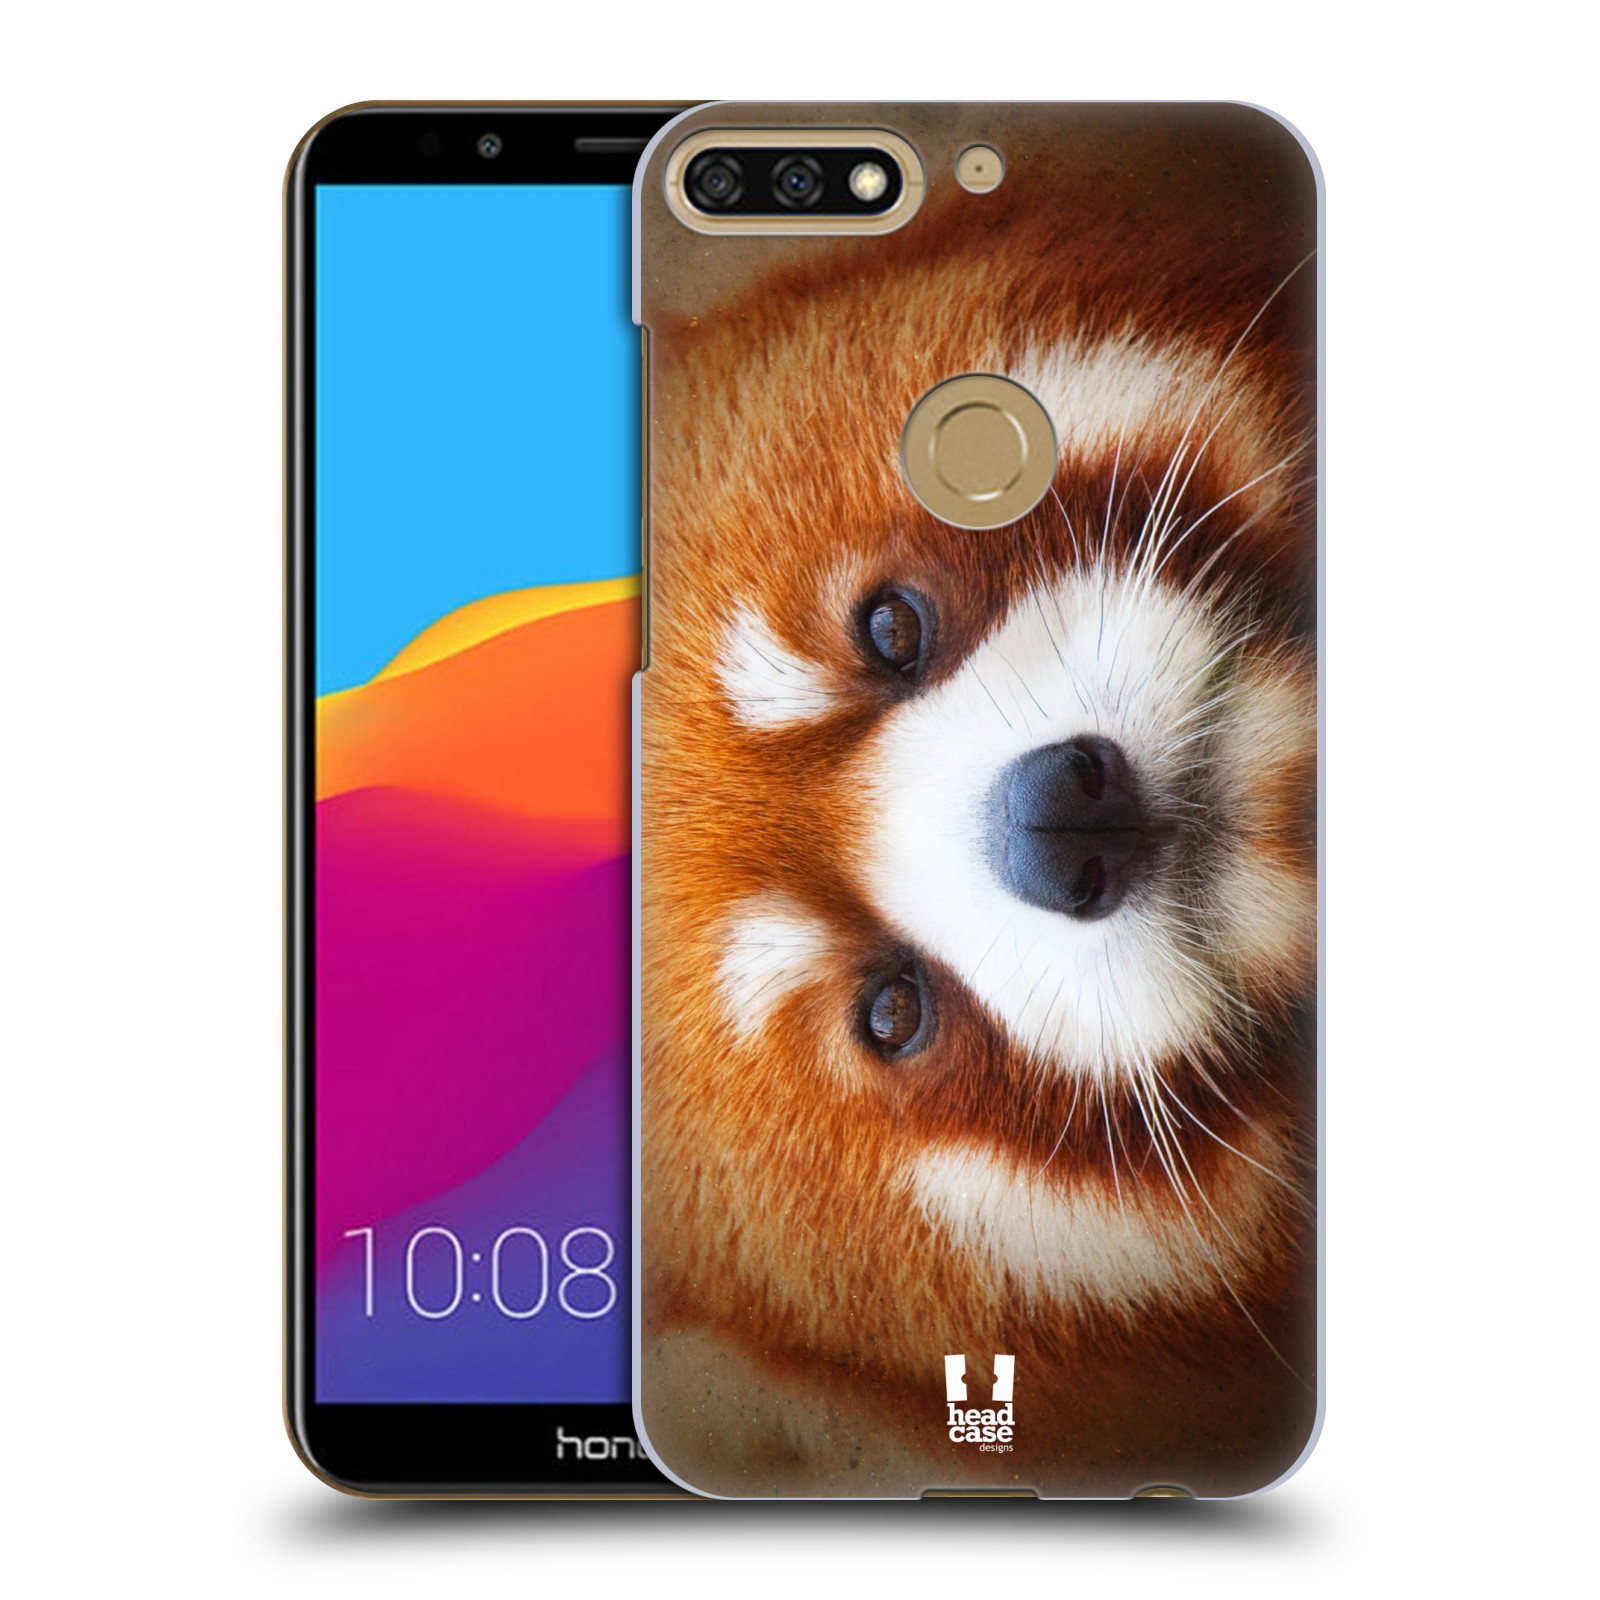 HEAD CASE plastový obal na mobil Honor 7c vzor Zvířecí tváře 2 medvěd panda rudá